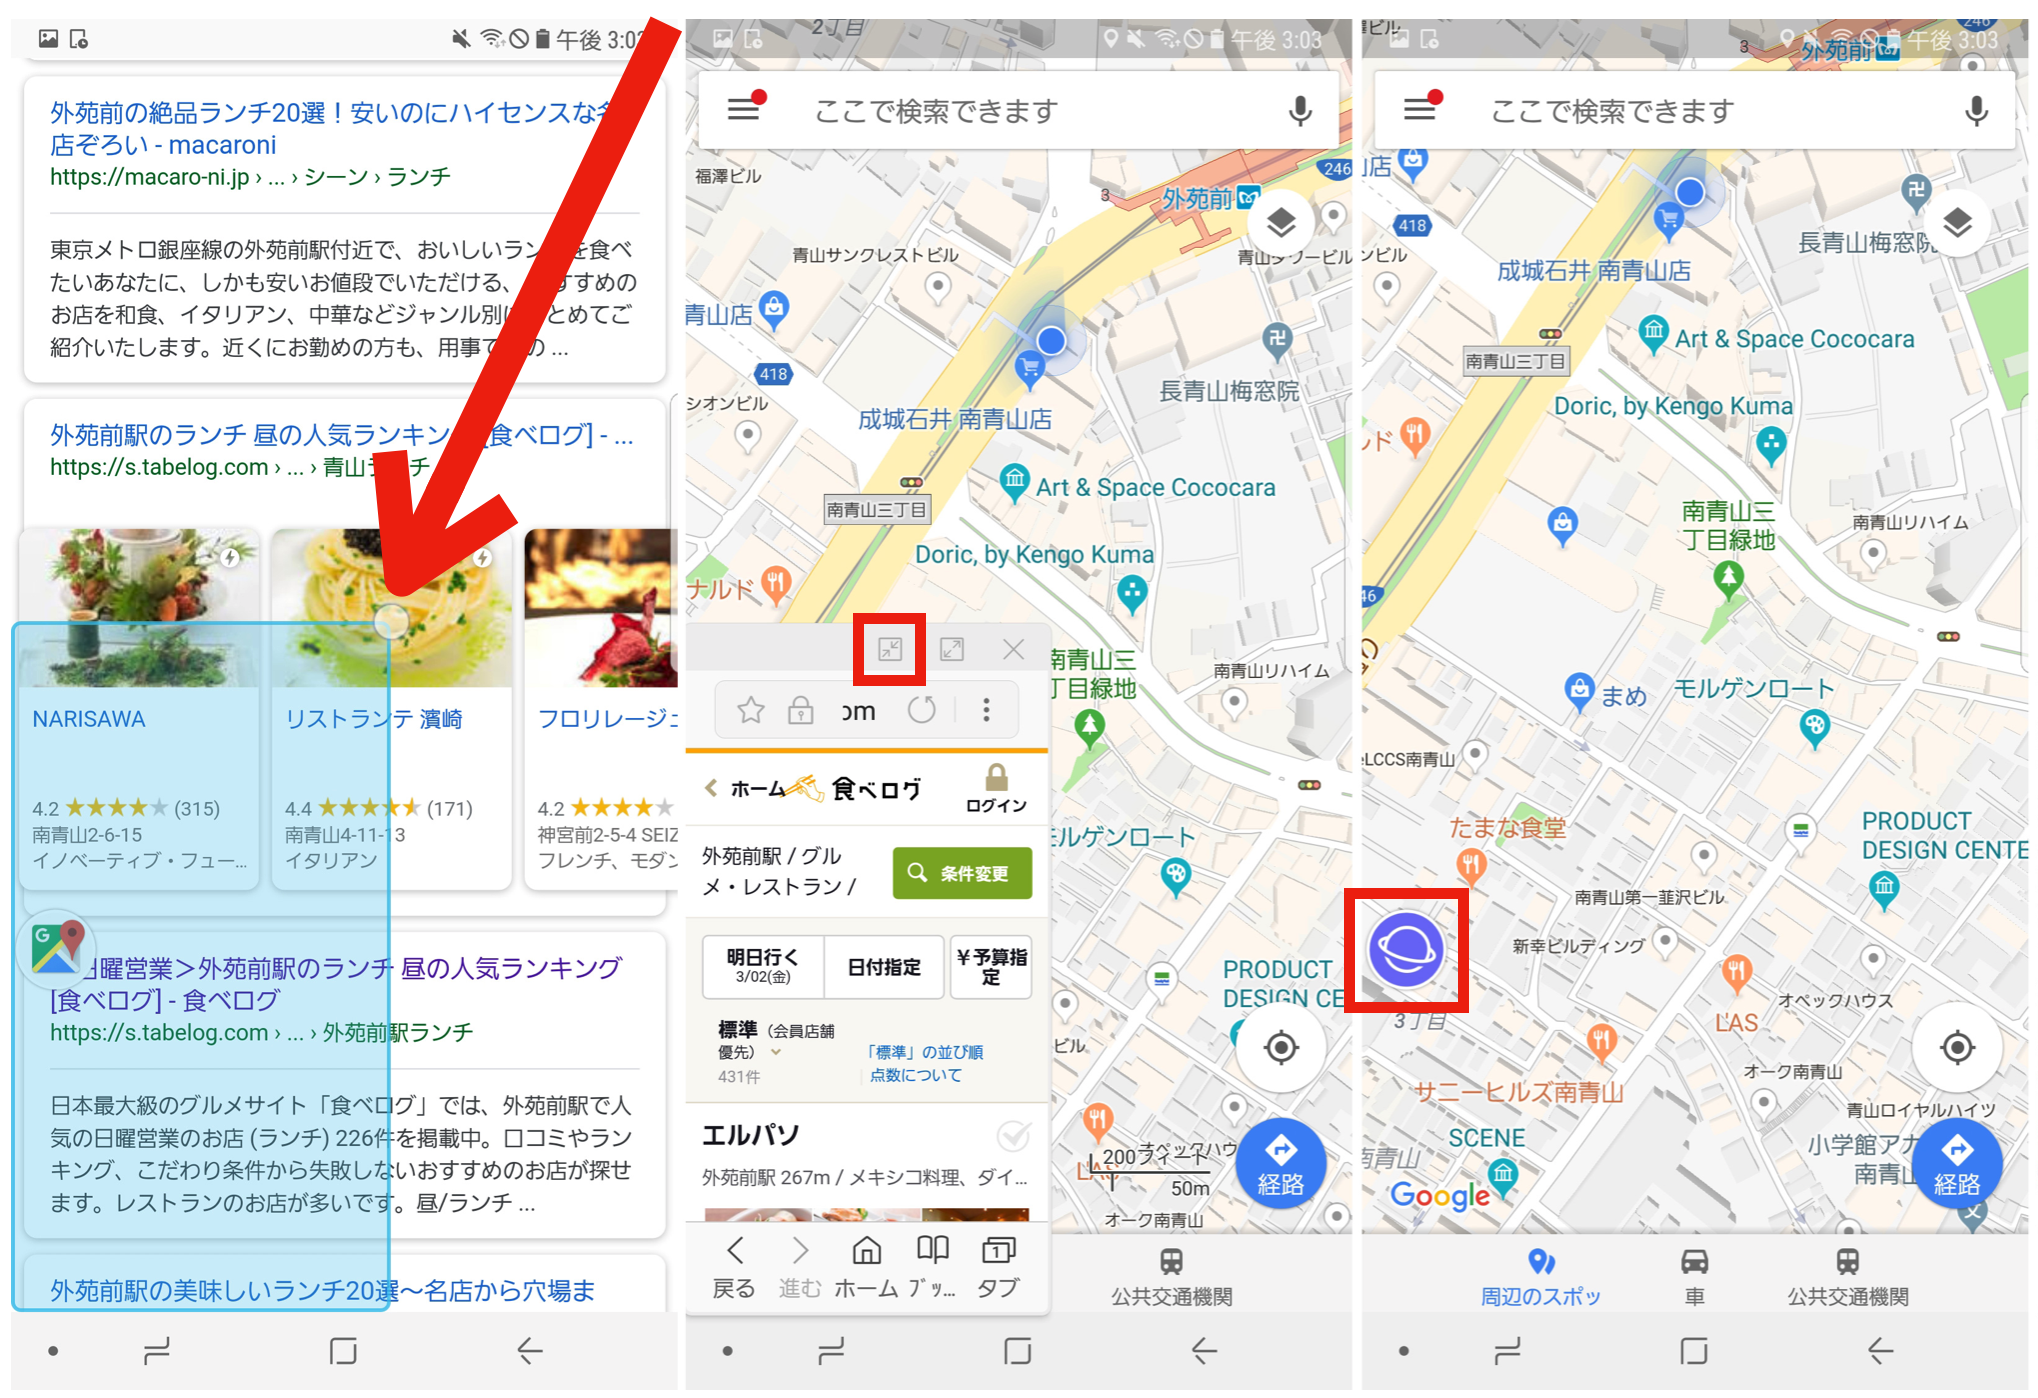 Galaxy Note8のここ便利 マルチウィンドウ機能はスワイプ操作でポップアップ表示もできる Engadget 日本版